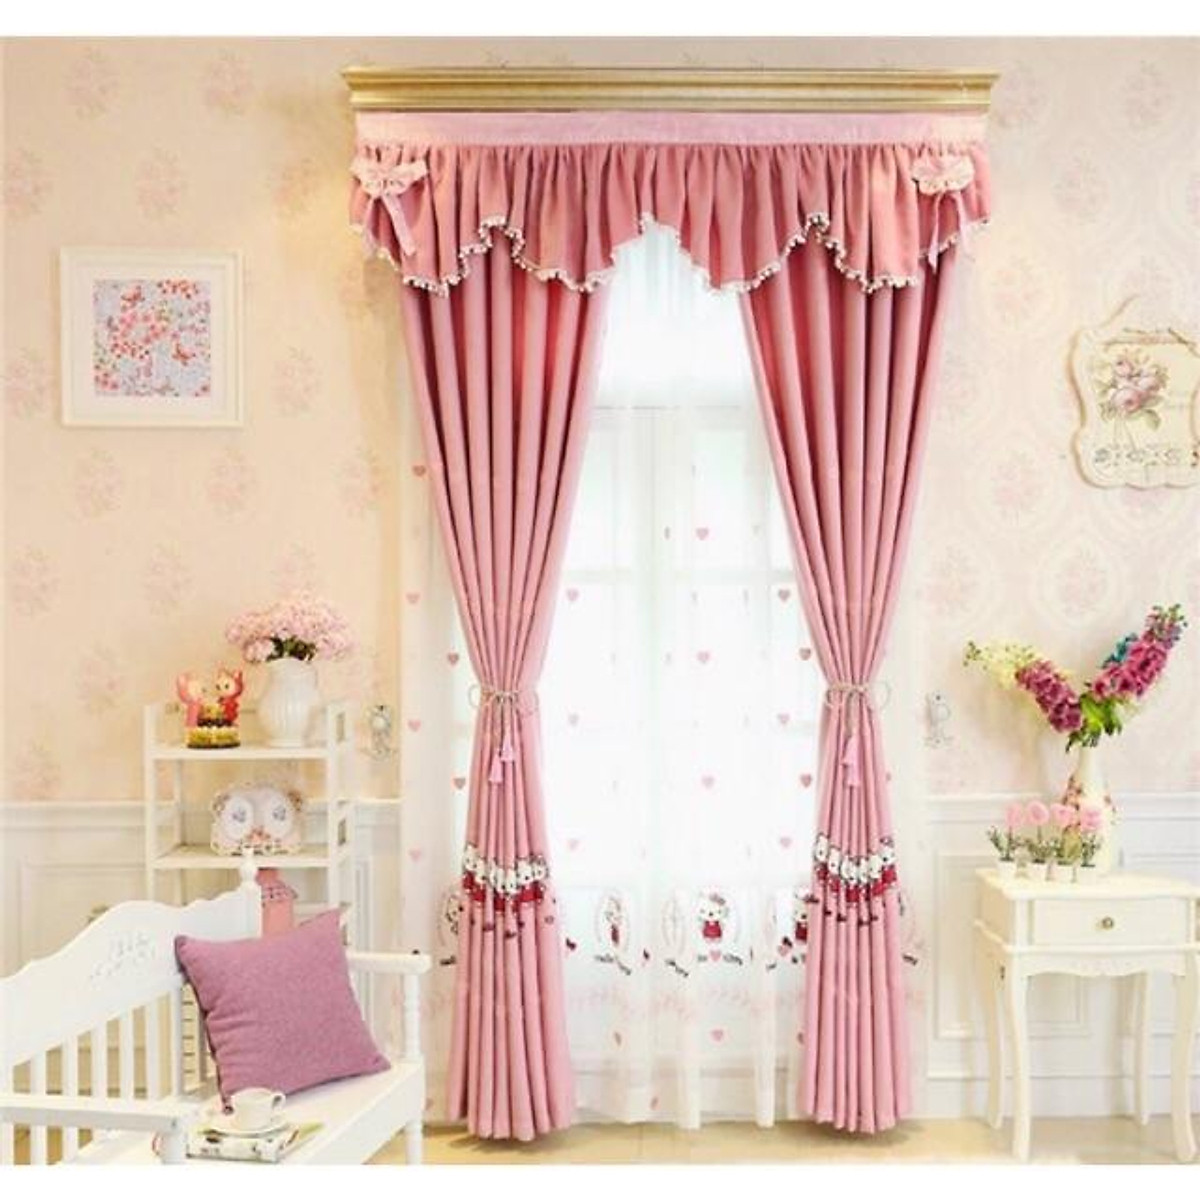 Rèm Thêu Kitty xinh xắn, rèm cửa màu hồng trang trí phòng ngủ trẻ em - Cao cố định 3.0m